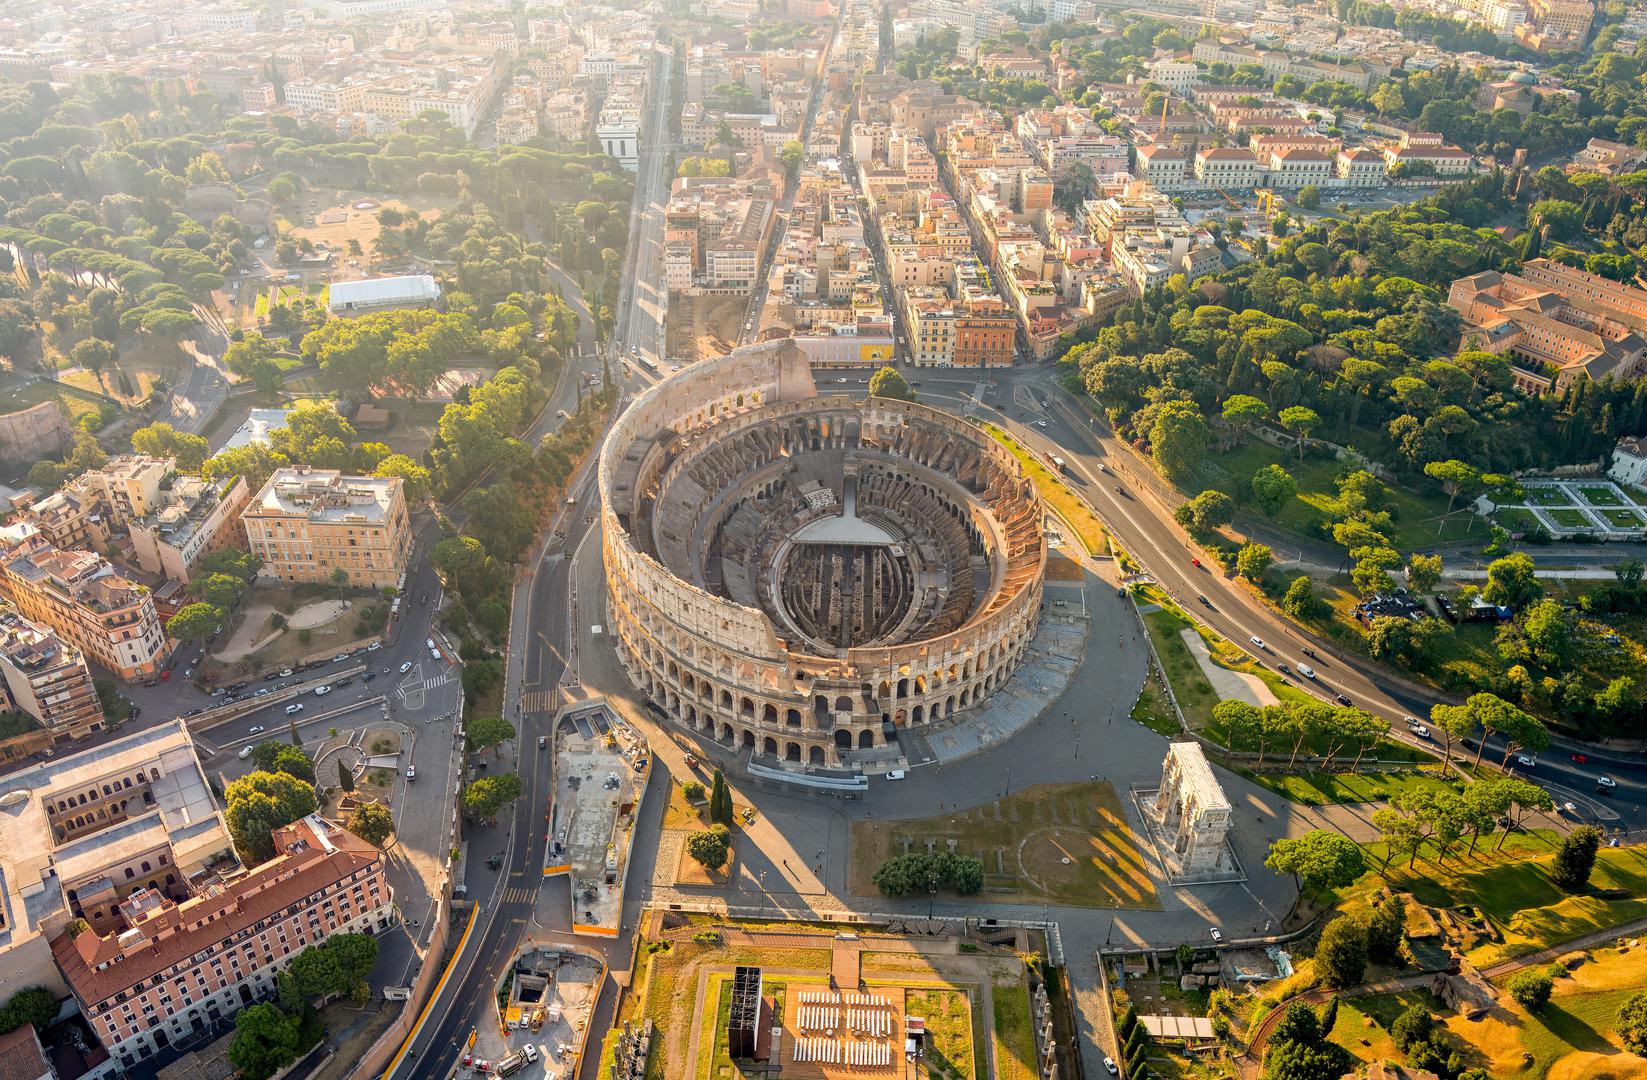 1. Italija ima najviše mjesta svjetske baštine UNESCO-a: Italija ima više od 50 mjesta svjetske baštine UNESCO-a, više nego bilo koja druga zemlja na svijetu, a to uključuje povijesno središte Firence, kanale Venecije, kuće Trulli u Alberobellu, Koloseum u Rimu i Amalfijsku obalu. 